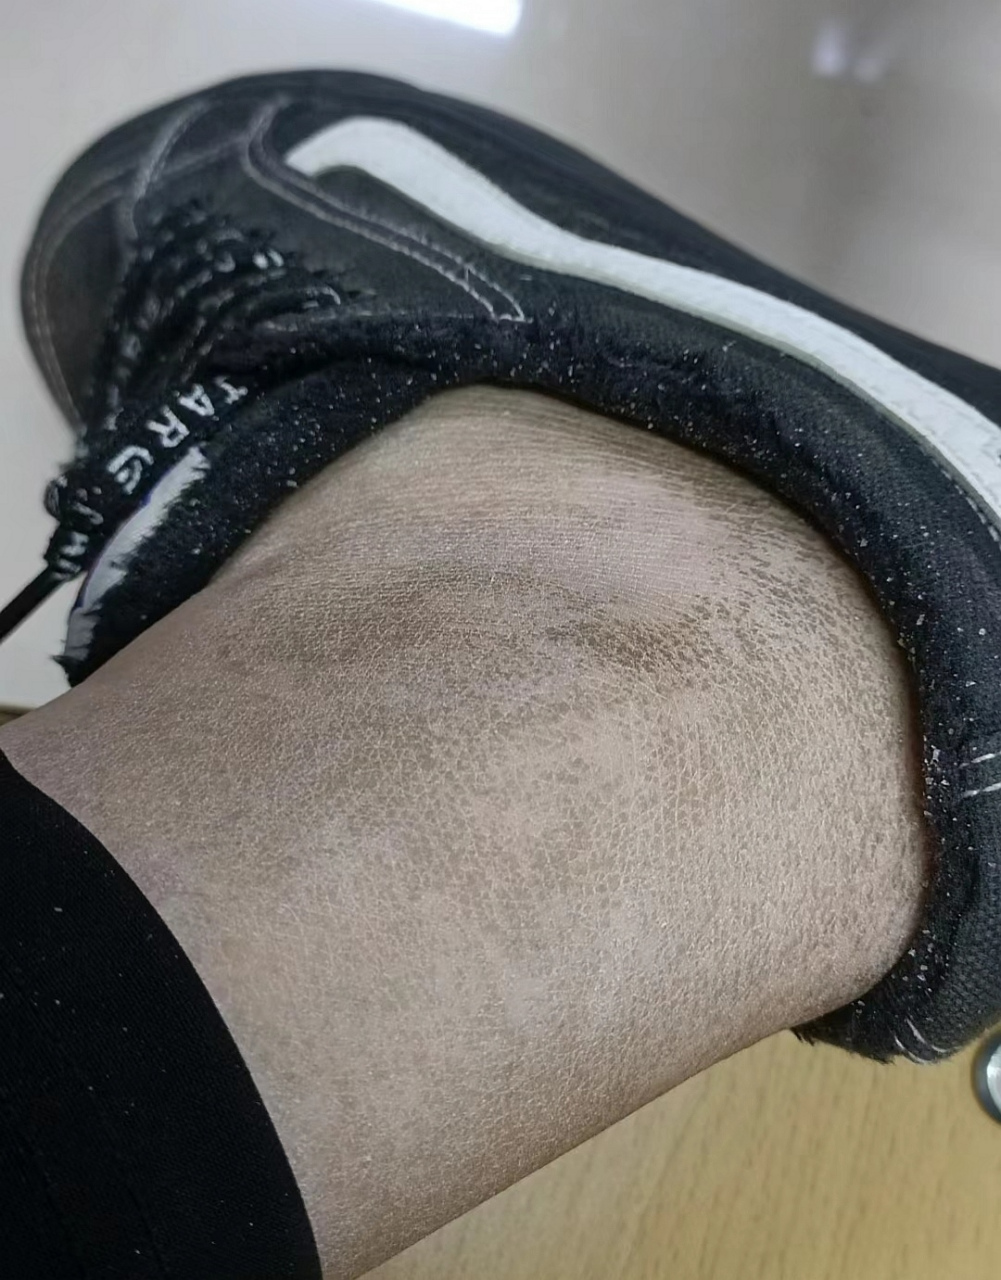 网友:一觉睡醒腿上的皮肤竟然变成黑色的了,要看看我